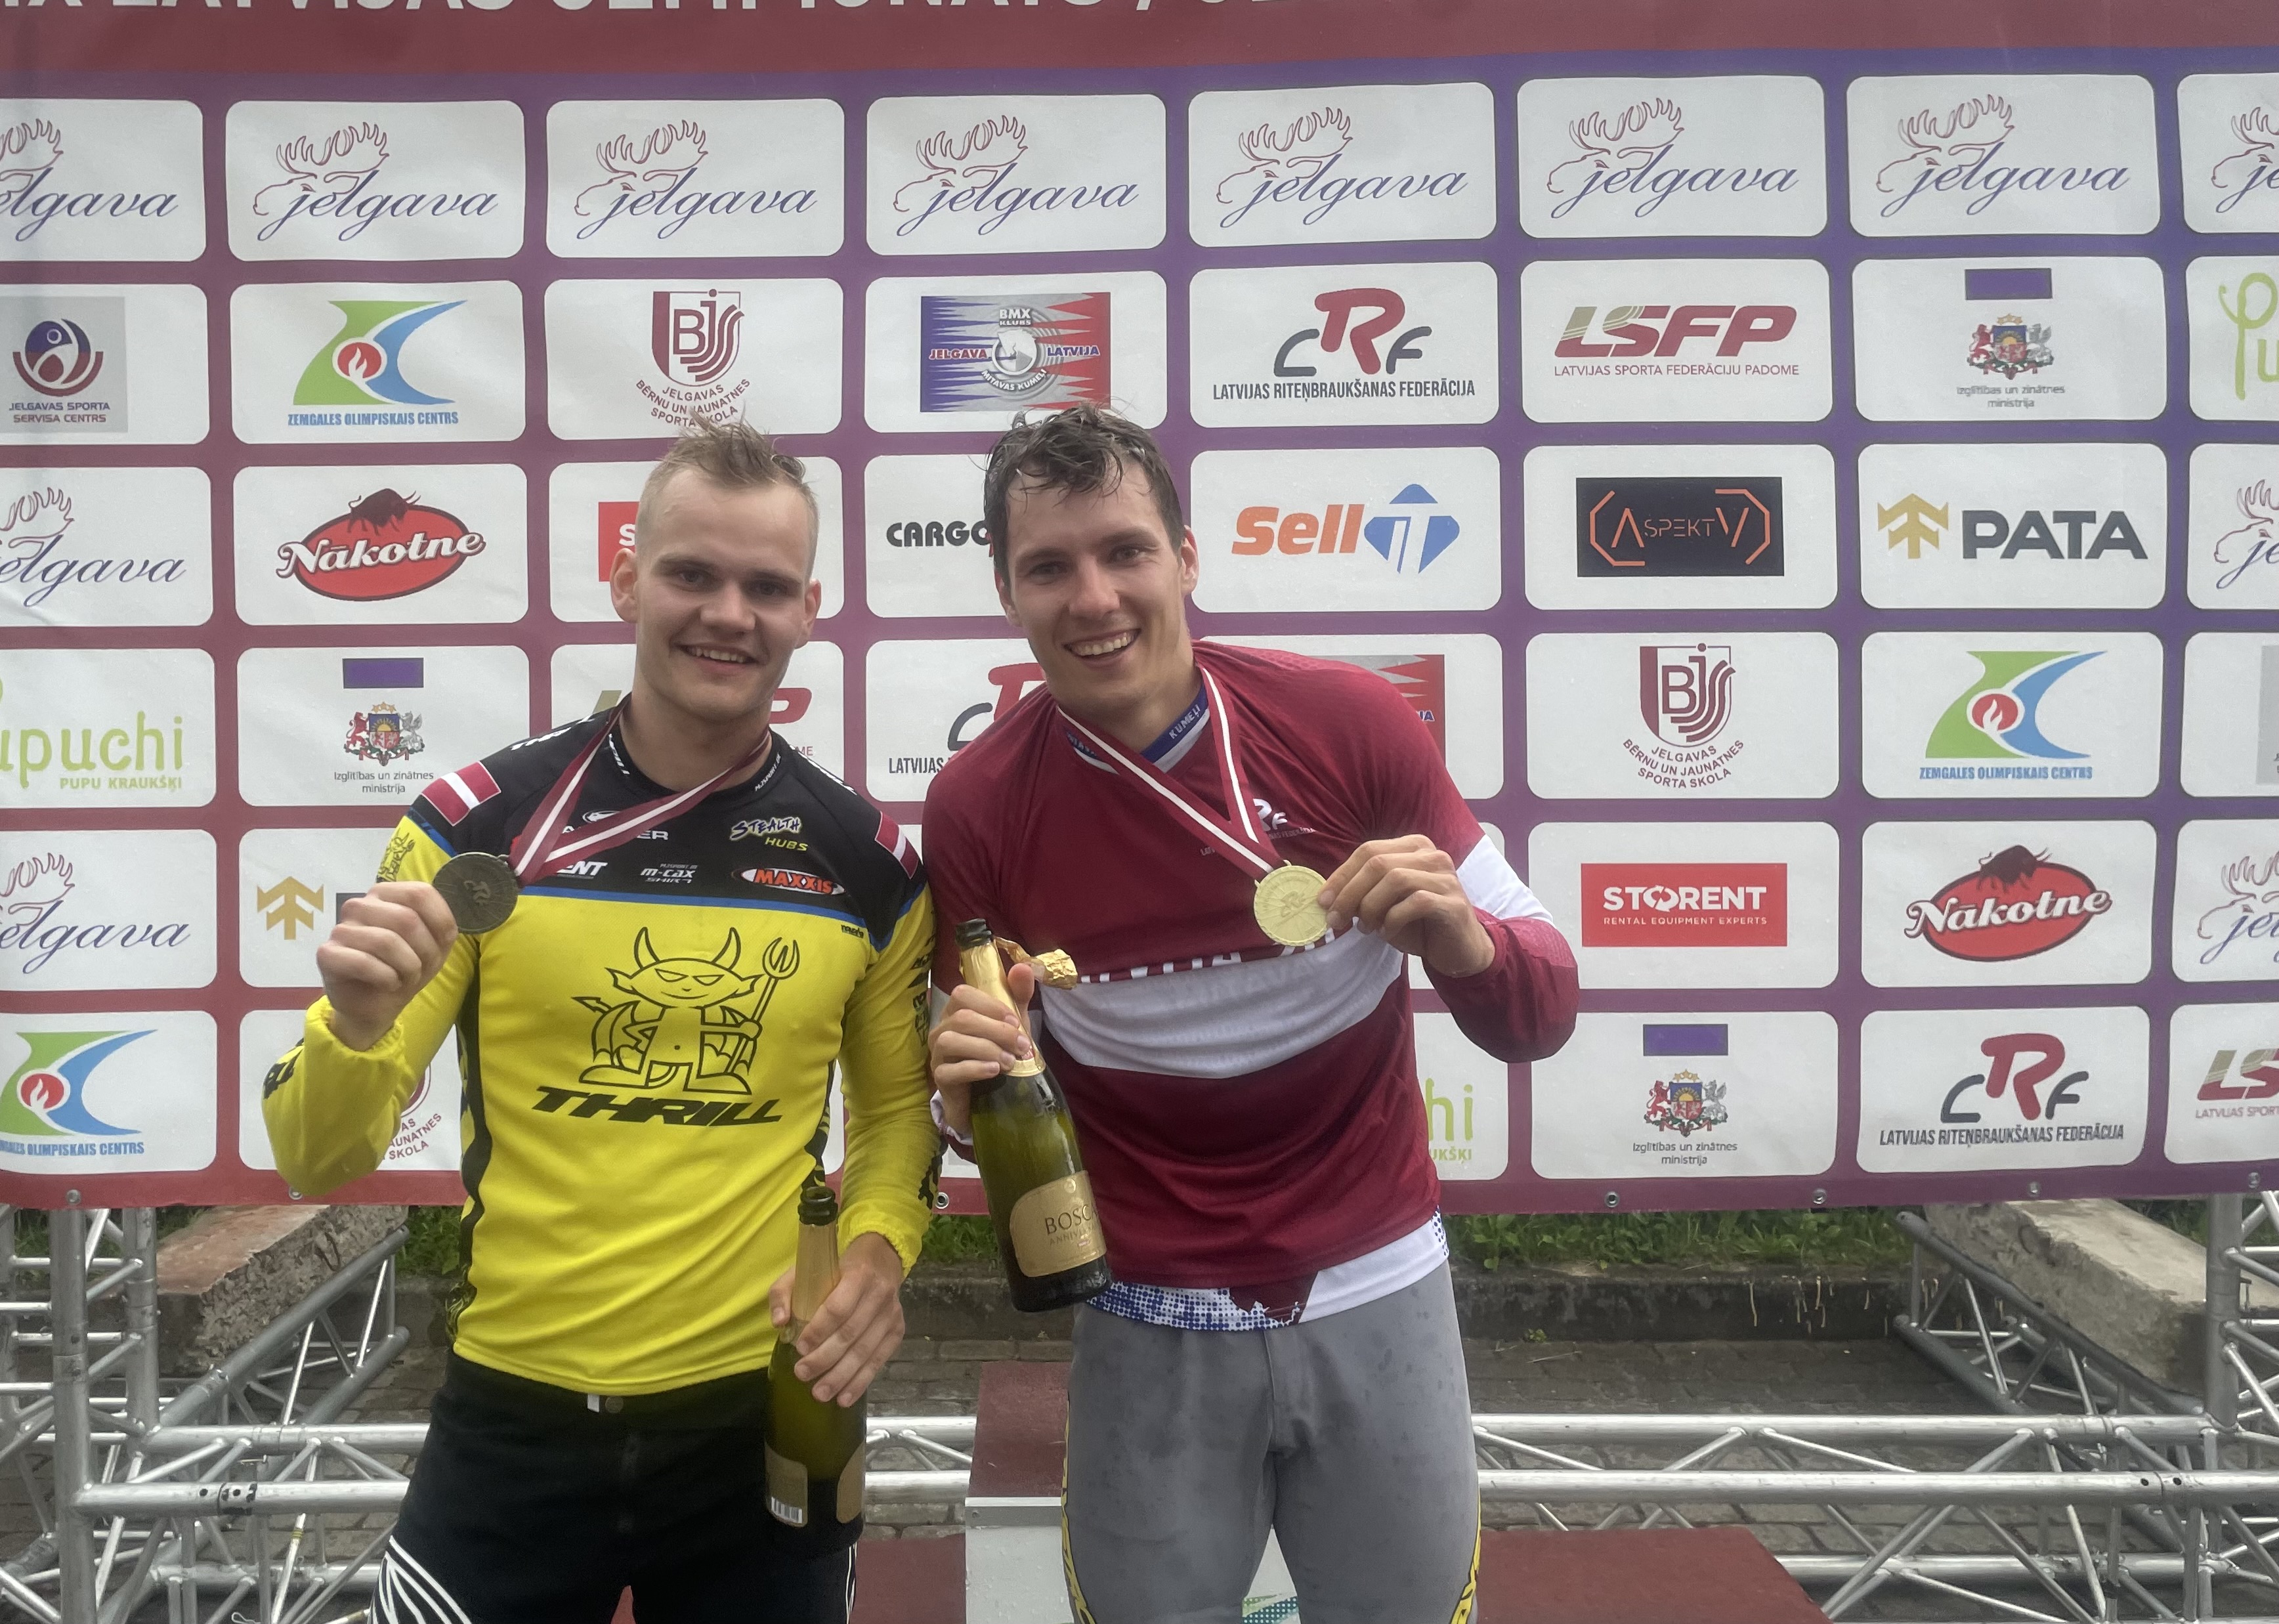 Krīgers un Pētersone Jelgavā kļūst par Latvijas elites čempioniem BMX (REZULTĀTI)